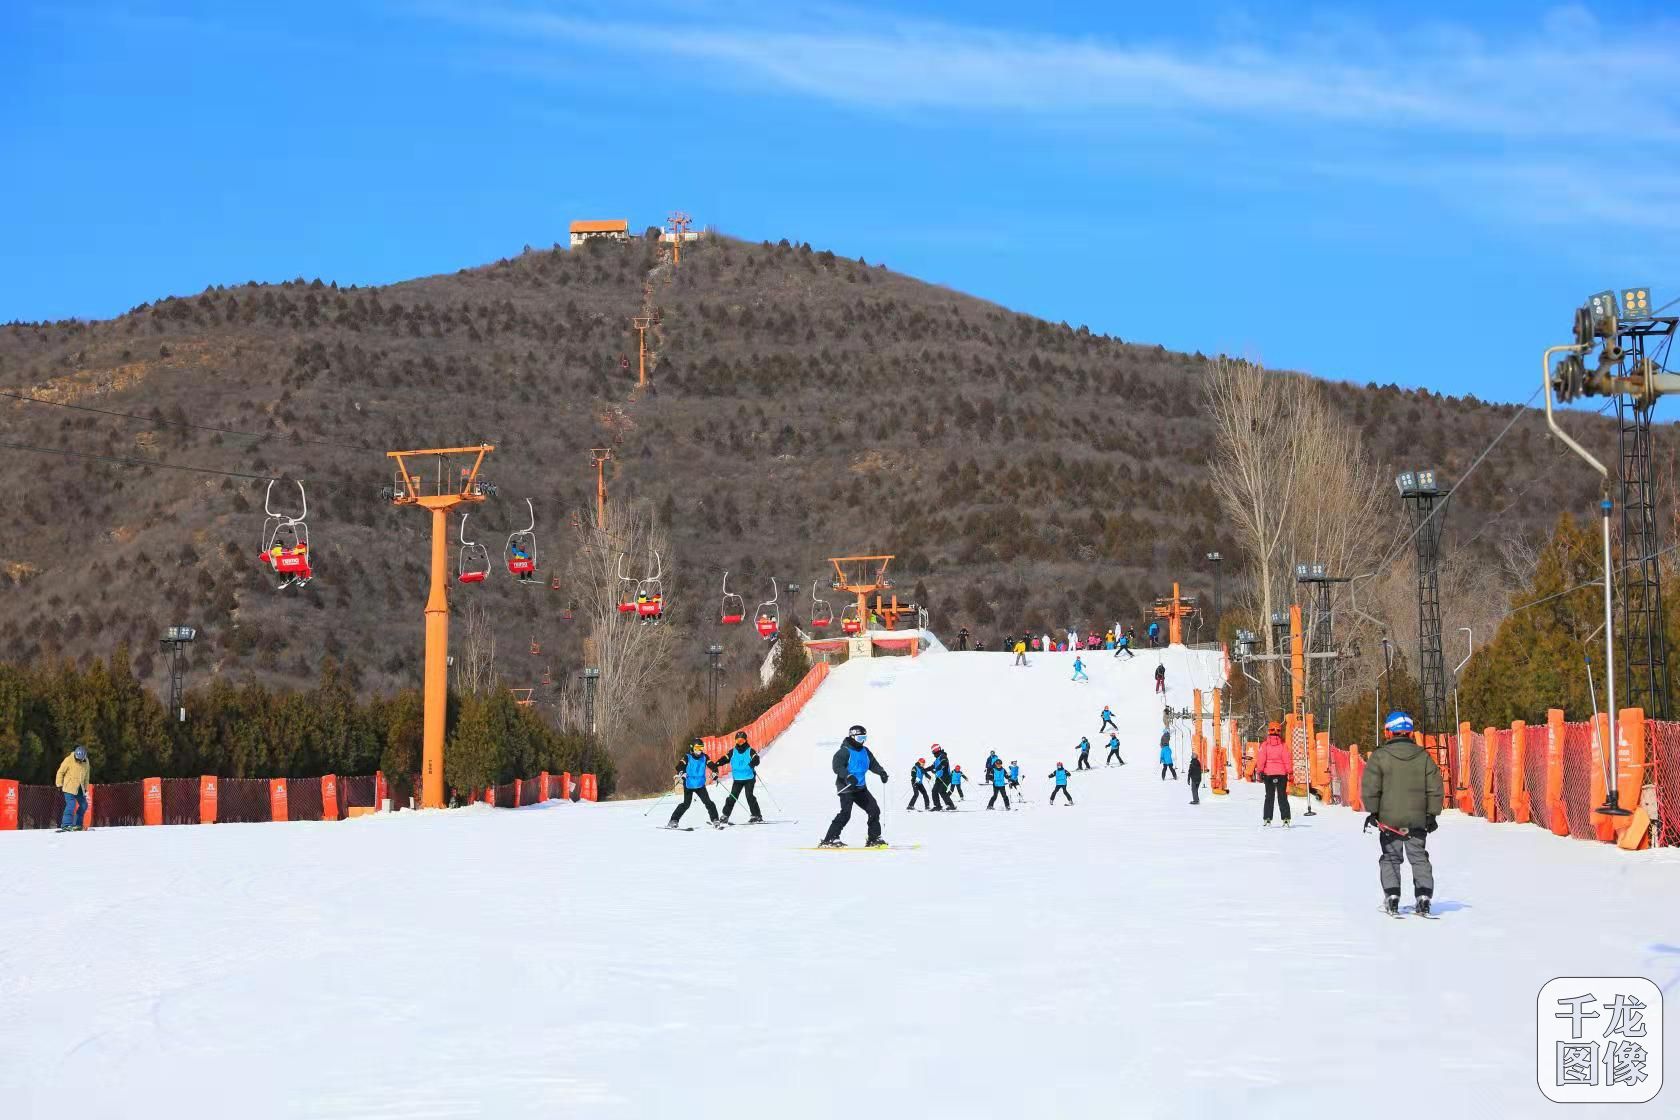 在北京静之湖滑雪场,假期热度非凡,中初级雪道和练习场上人头攒动